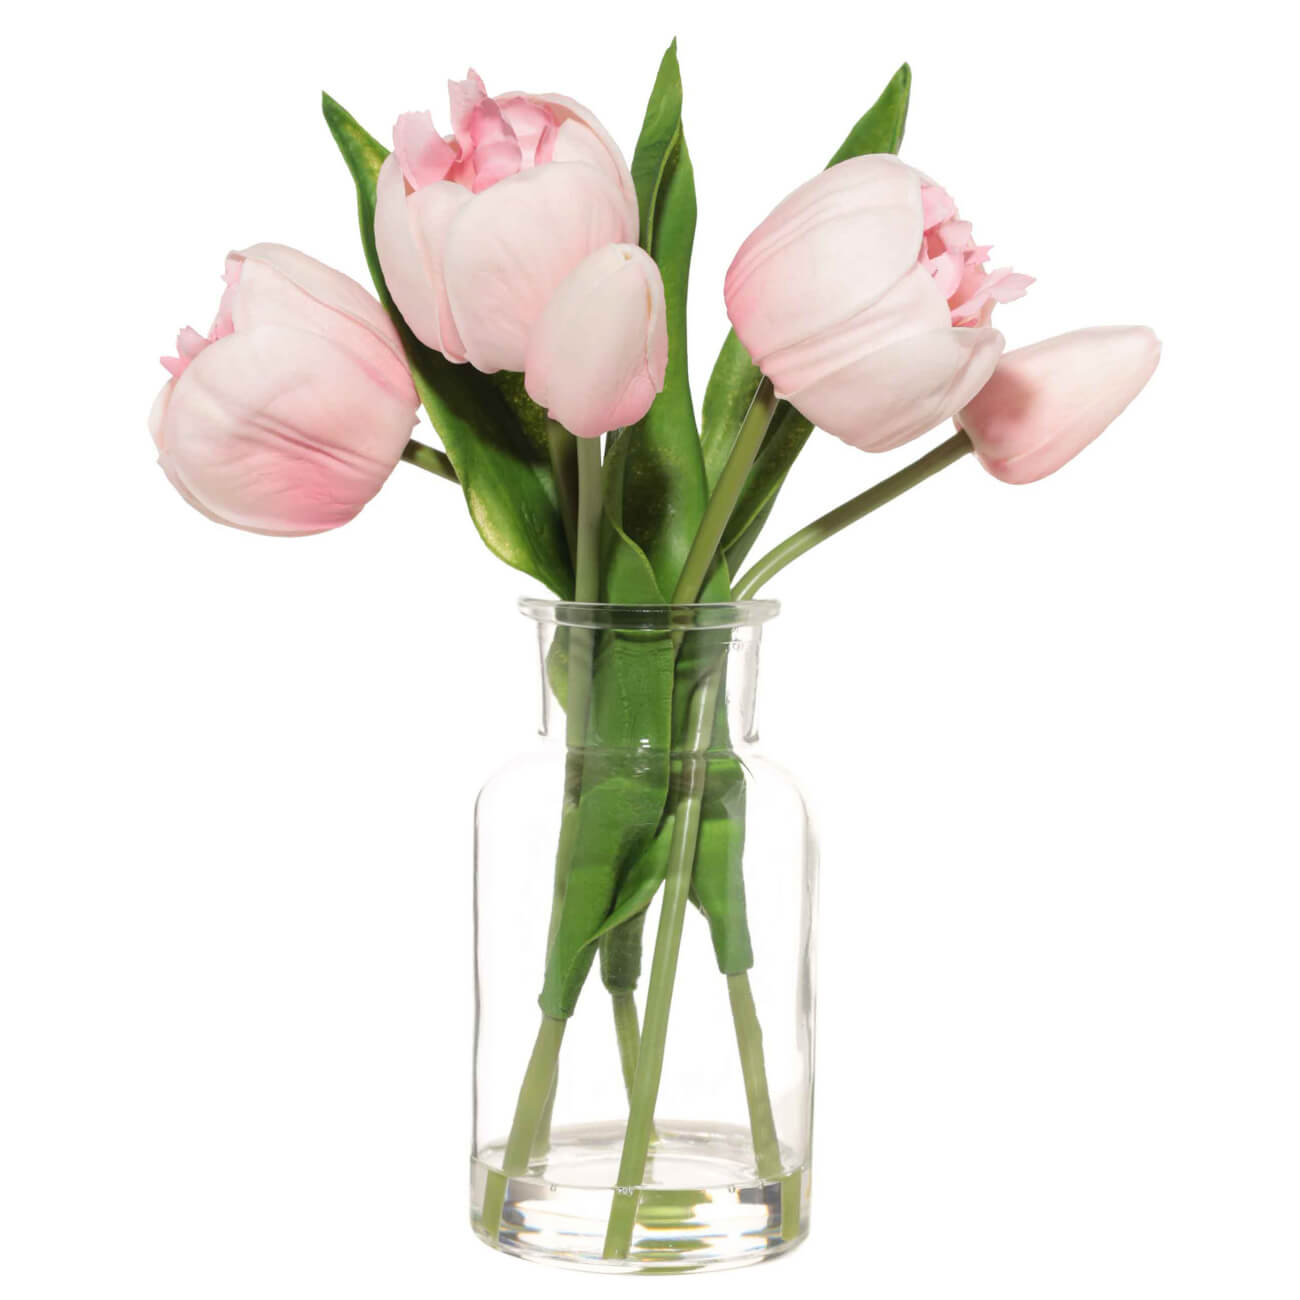 Букет искусственный, 21 см, в вазе, полиуретан/стекло, Розовые тюльпаны, Tulip garden букет красивая история